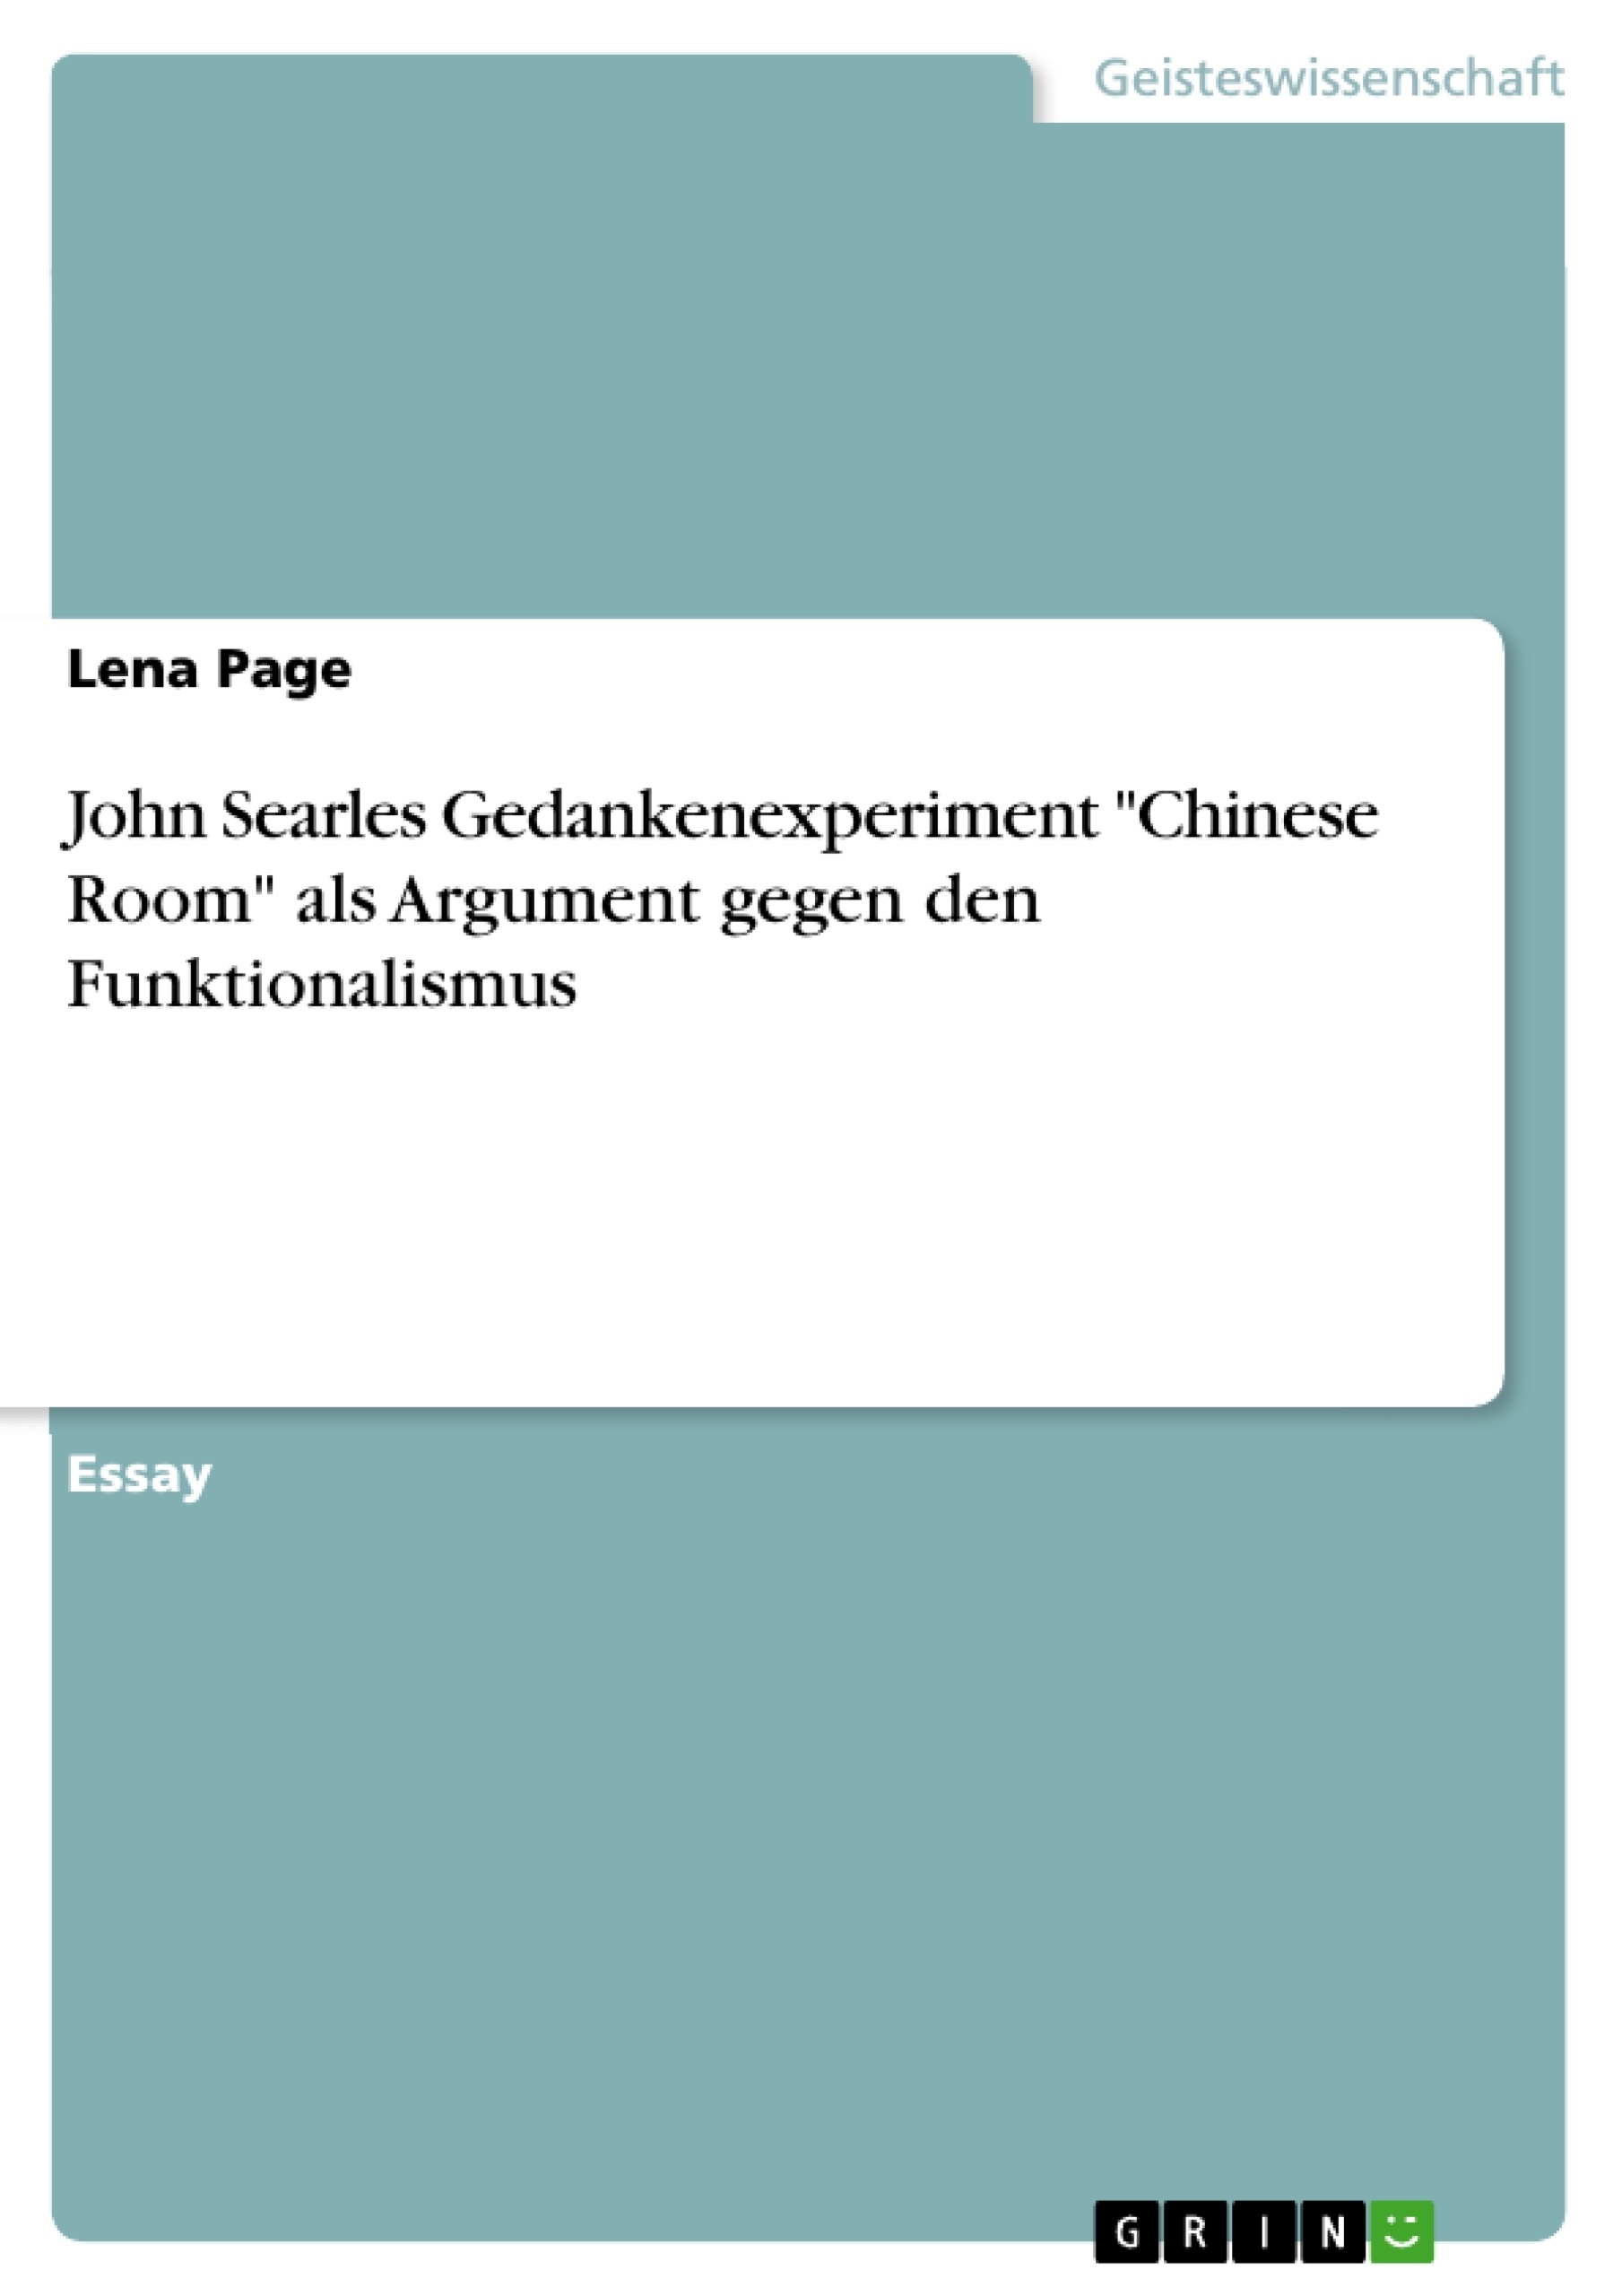 Hausarbeiten De John Searles Gedankenexperiment Chinese Room Als Argument Gegen Den Funktionalismus